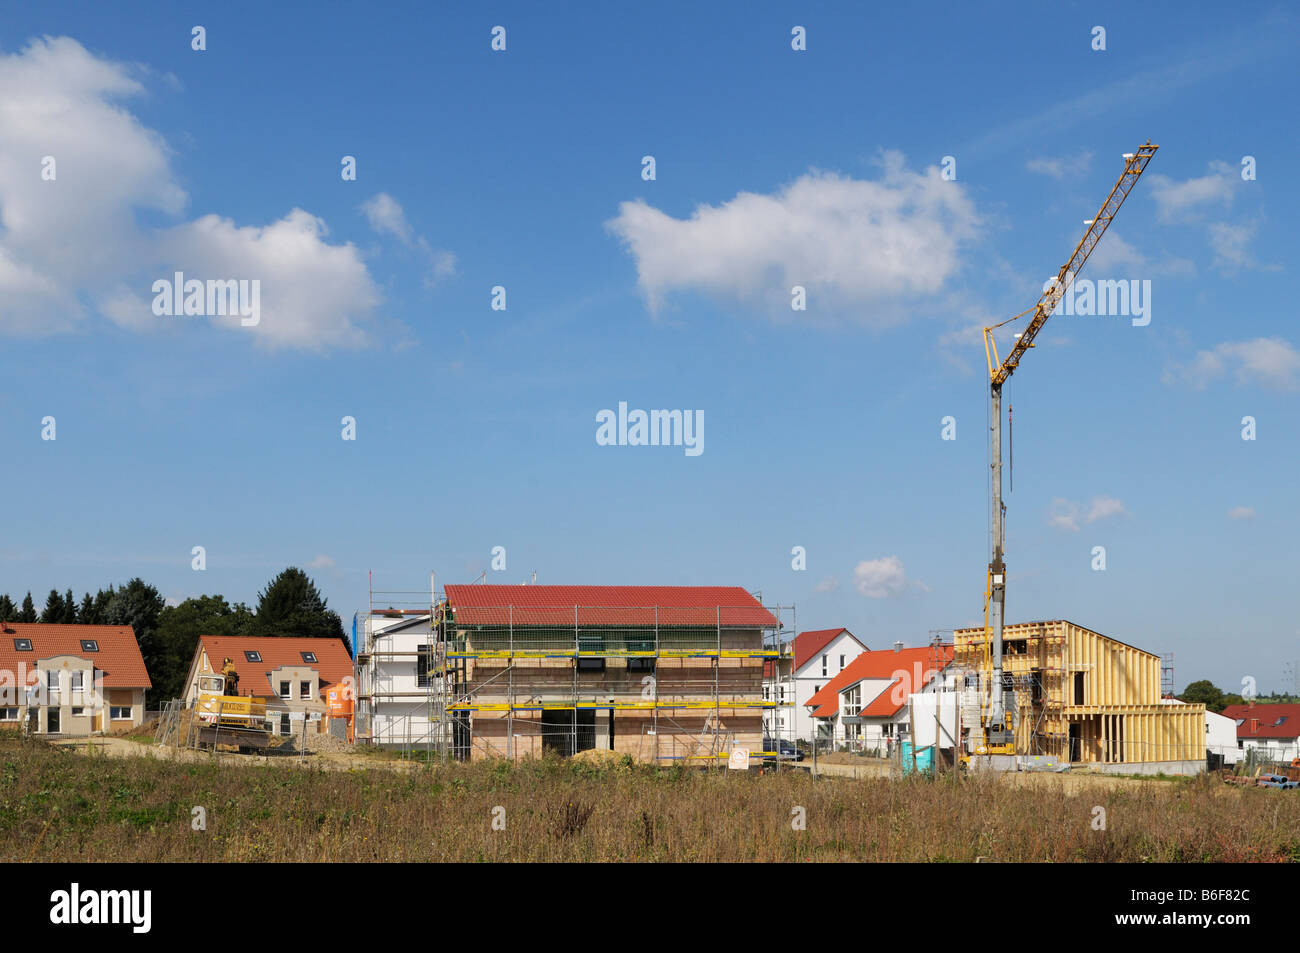 Zone de développement, différentes maisons à différents stades d'achèvement, y compris un bâtiment de bois, Mettmann, Amérique du Rhine-Westph Banque D'Images